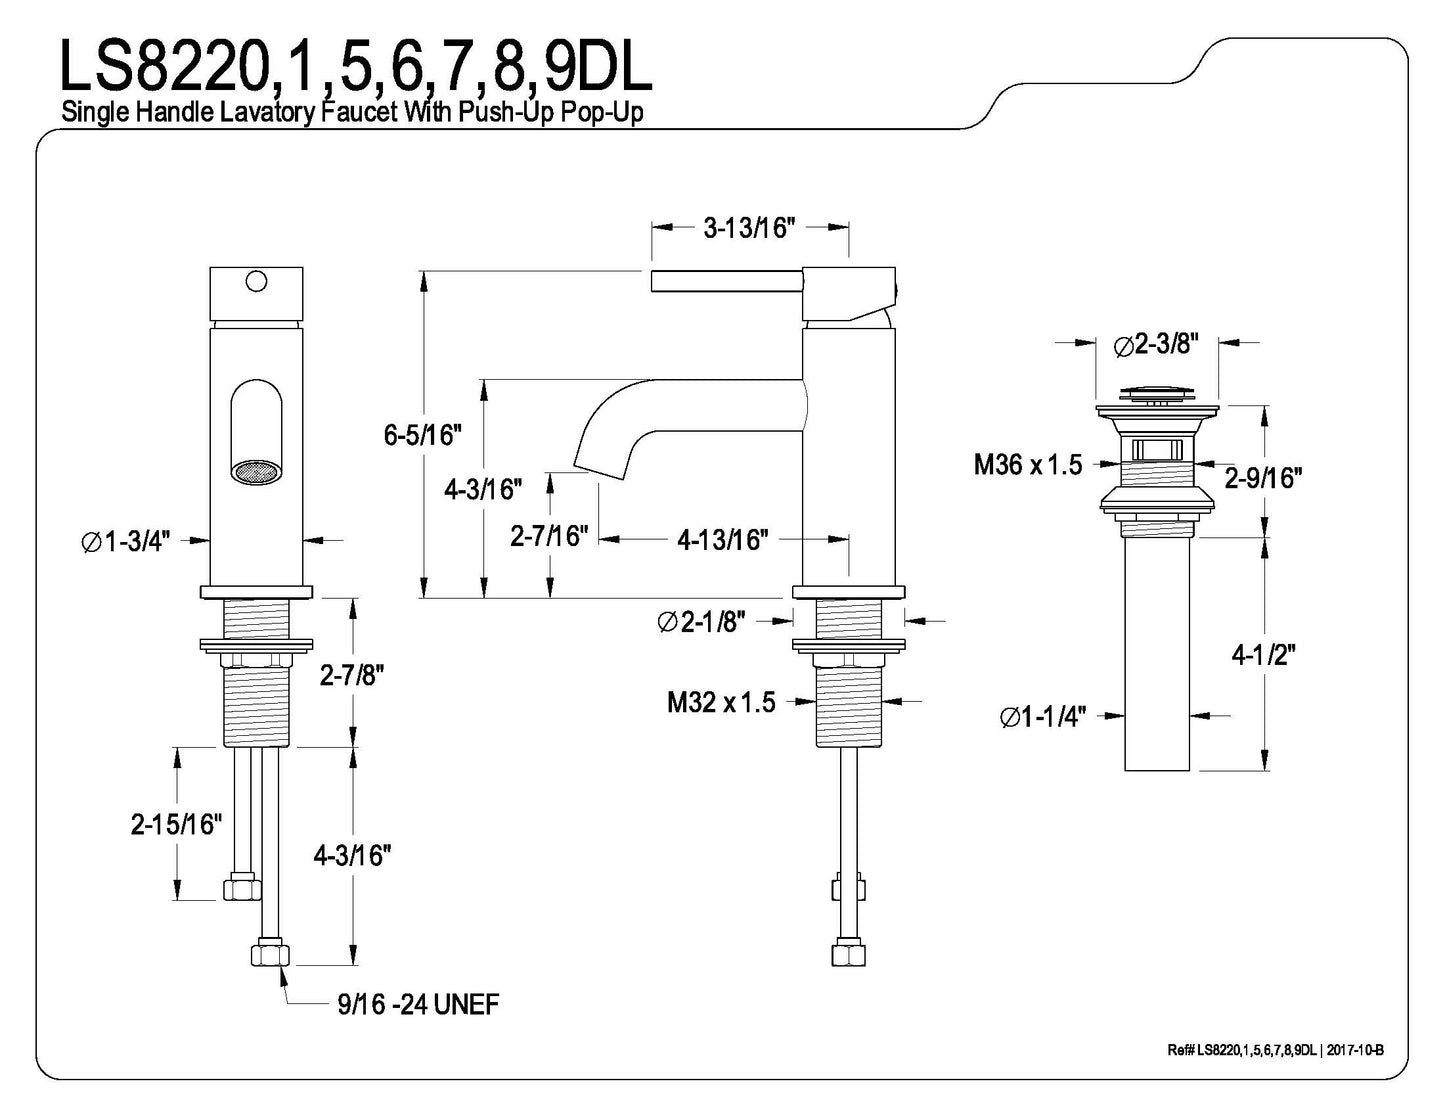 Concord Single Handle Monoblock Lavatory Faucet